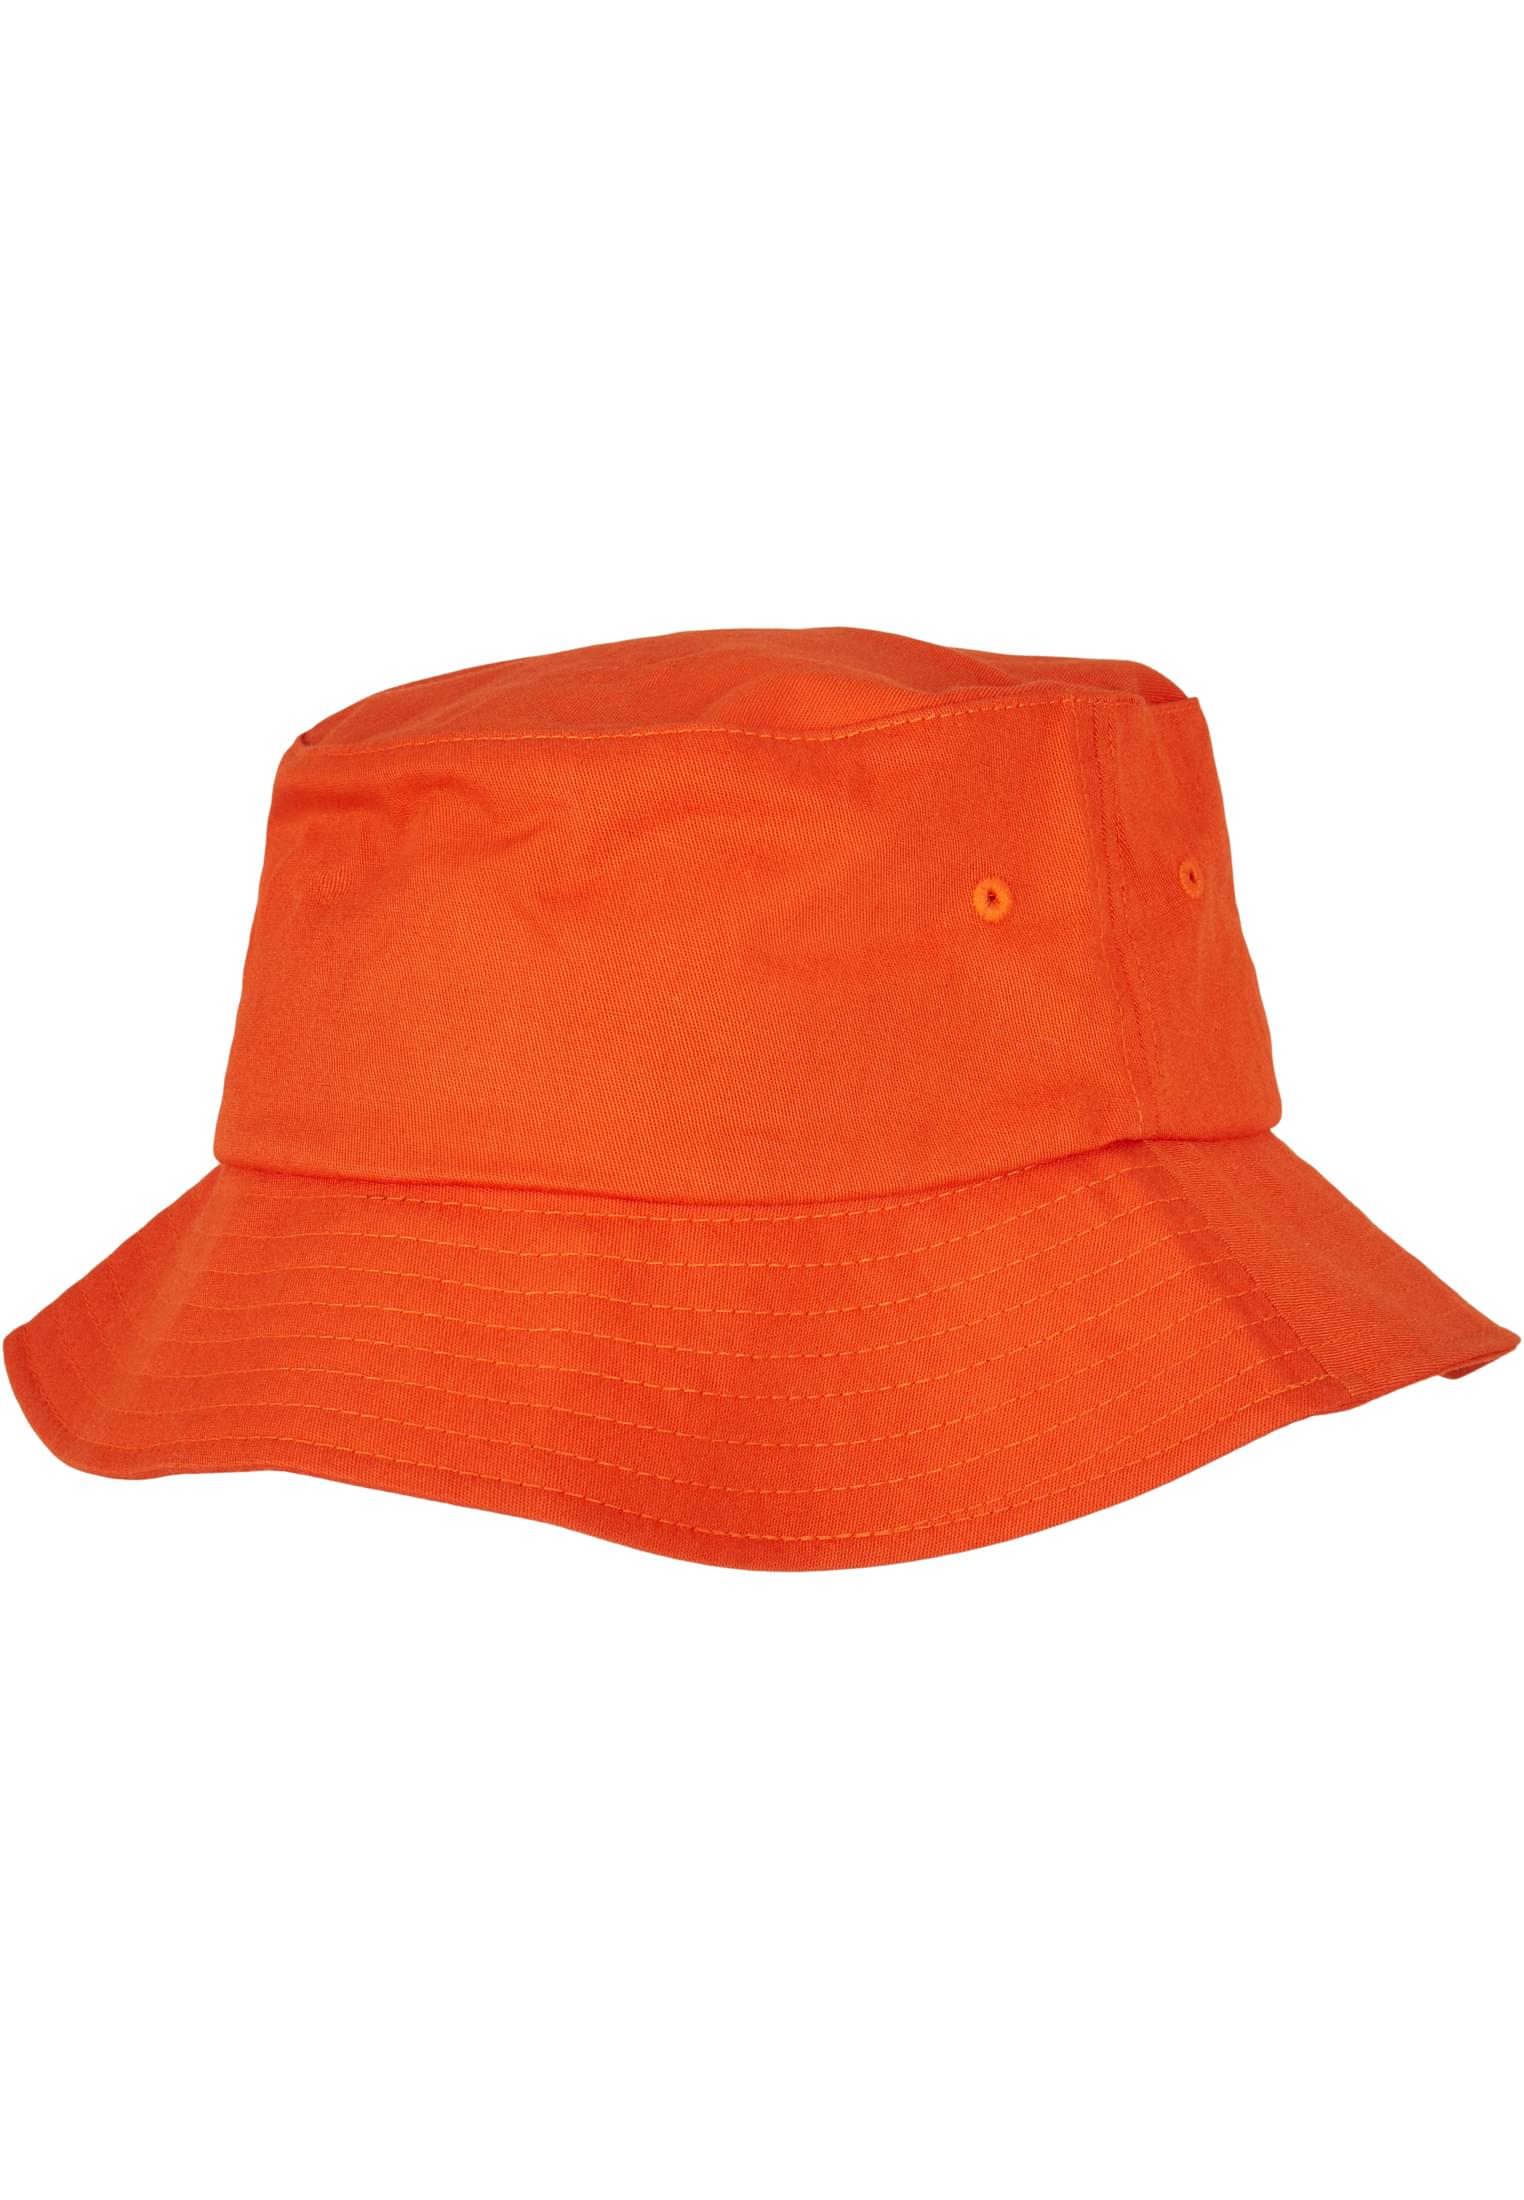 Hat-5003 Flexfit Bucket Cotton Twill